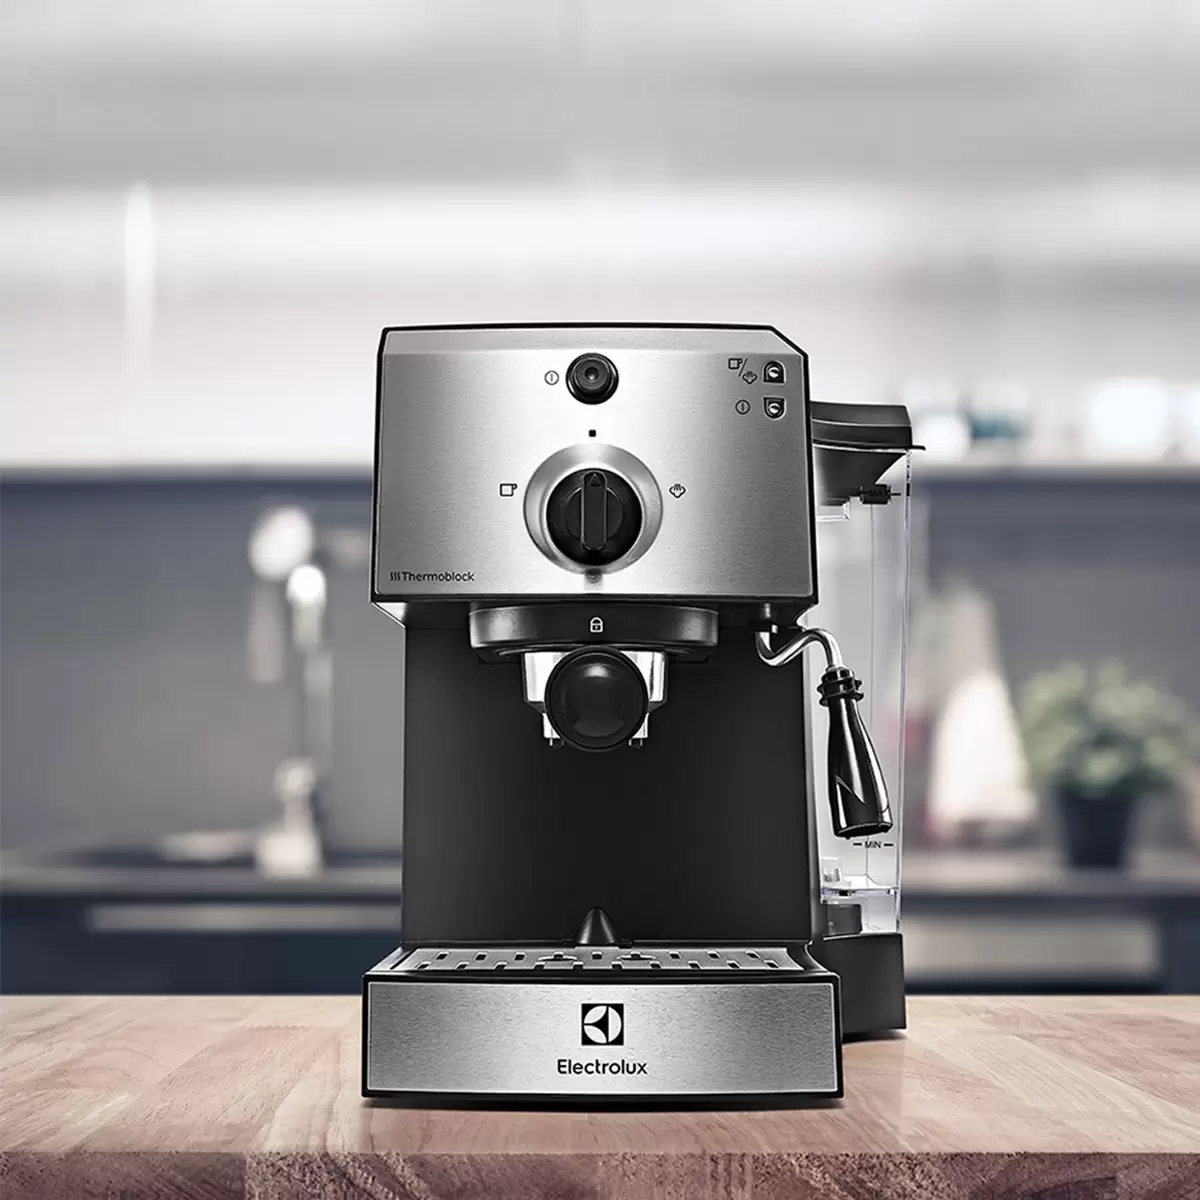 伊萊克斯 半自動義式咖啡機 E9EC1-100S